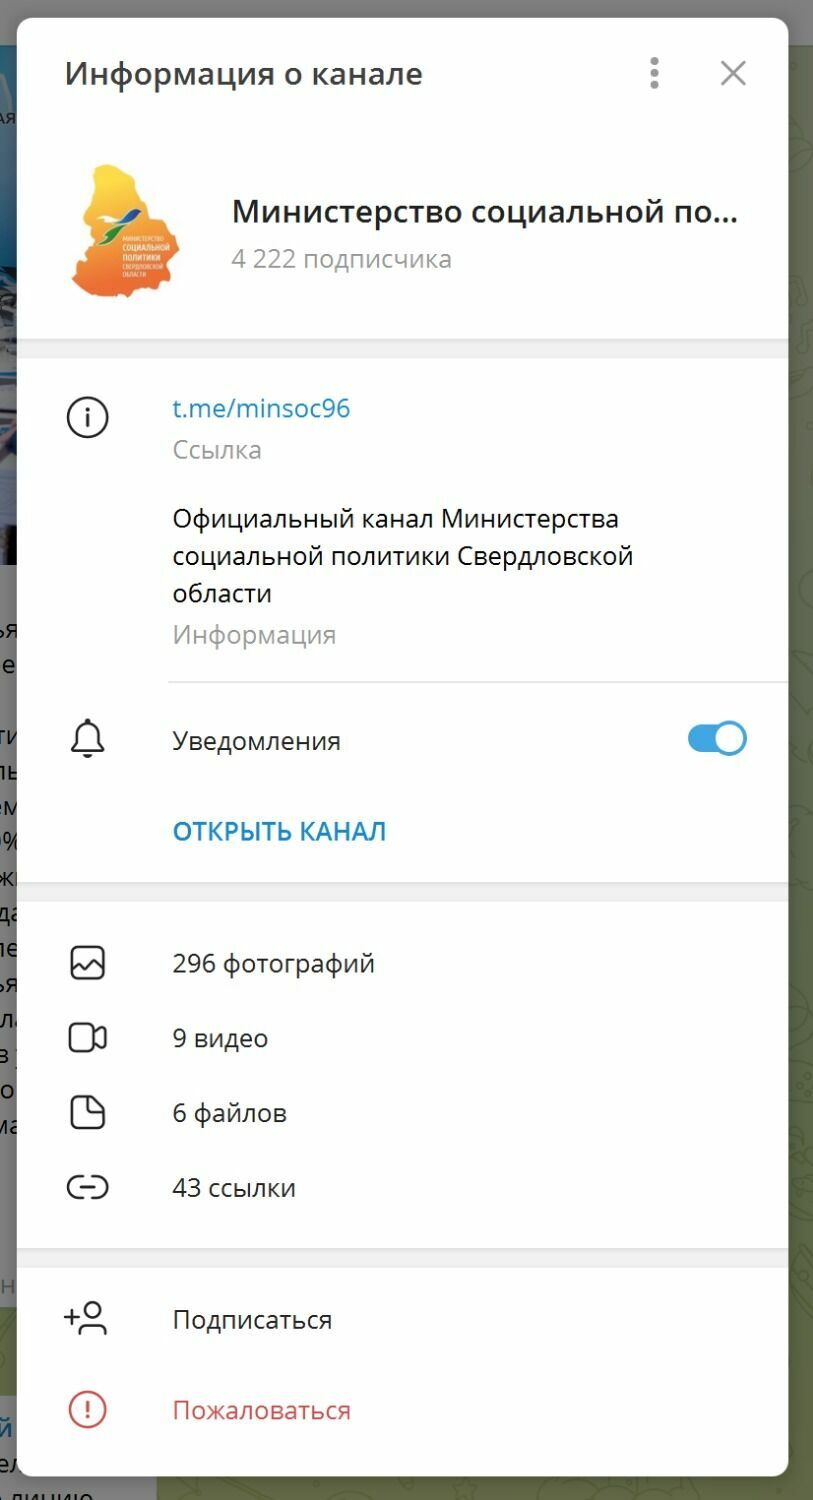 Официальный telegram-канал Министерства социальной политики Свердловской области